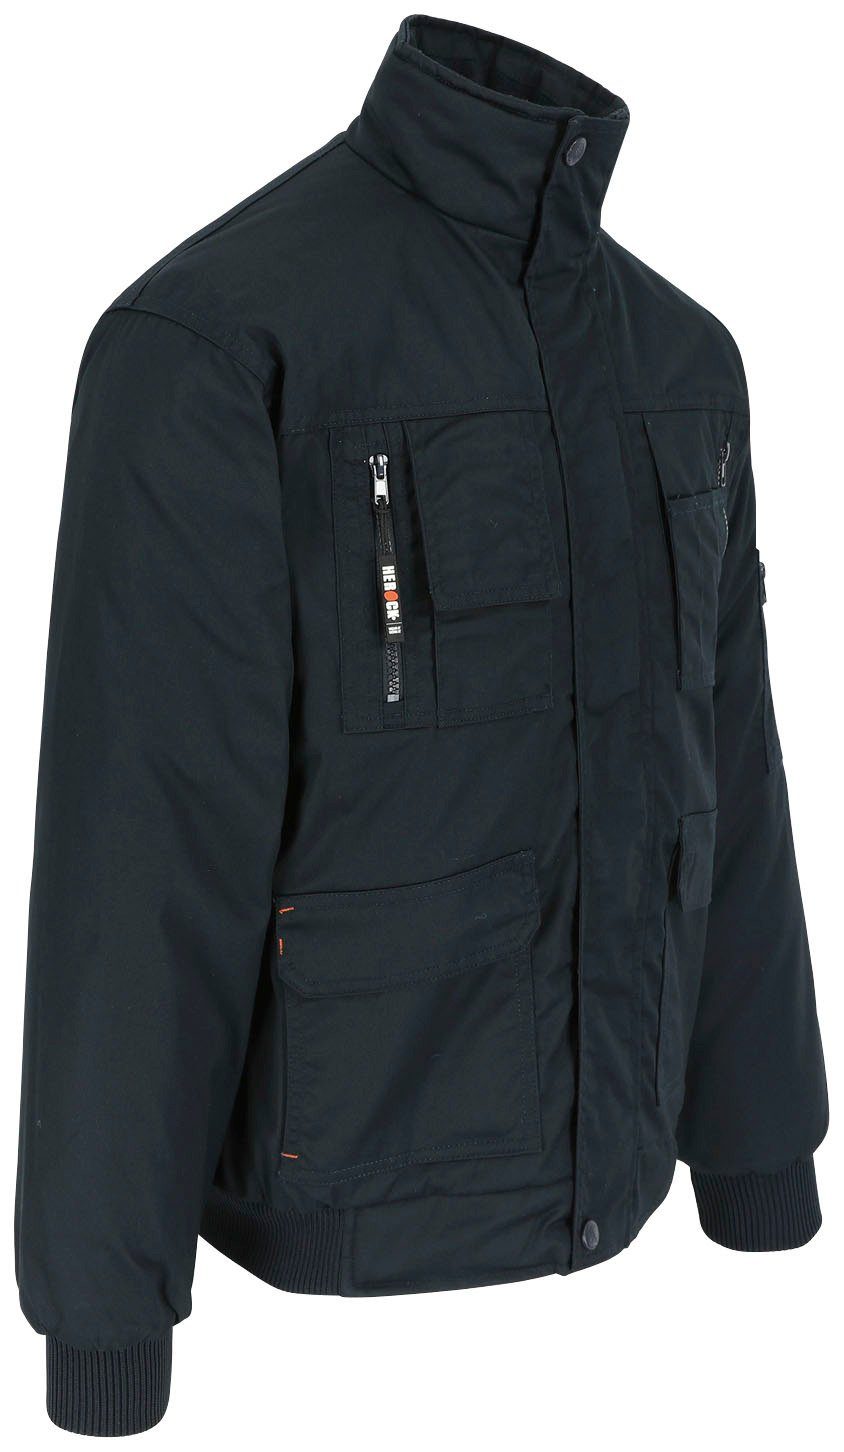 Herock Arbeitsjacke Typhon Jacke Wasserabweisend Taschen, mit Fleece-Kragen, marine robust, viele Farben viele